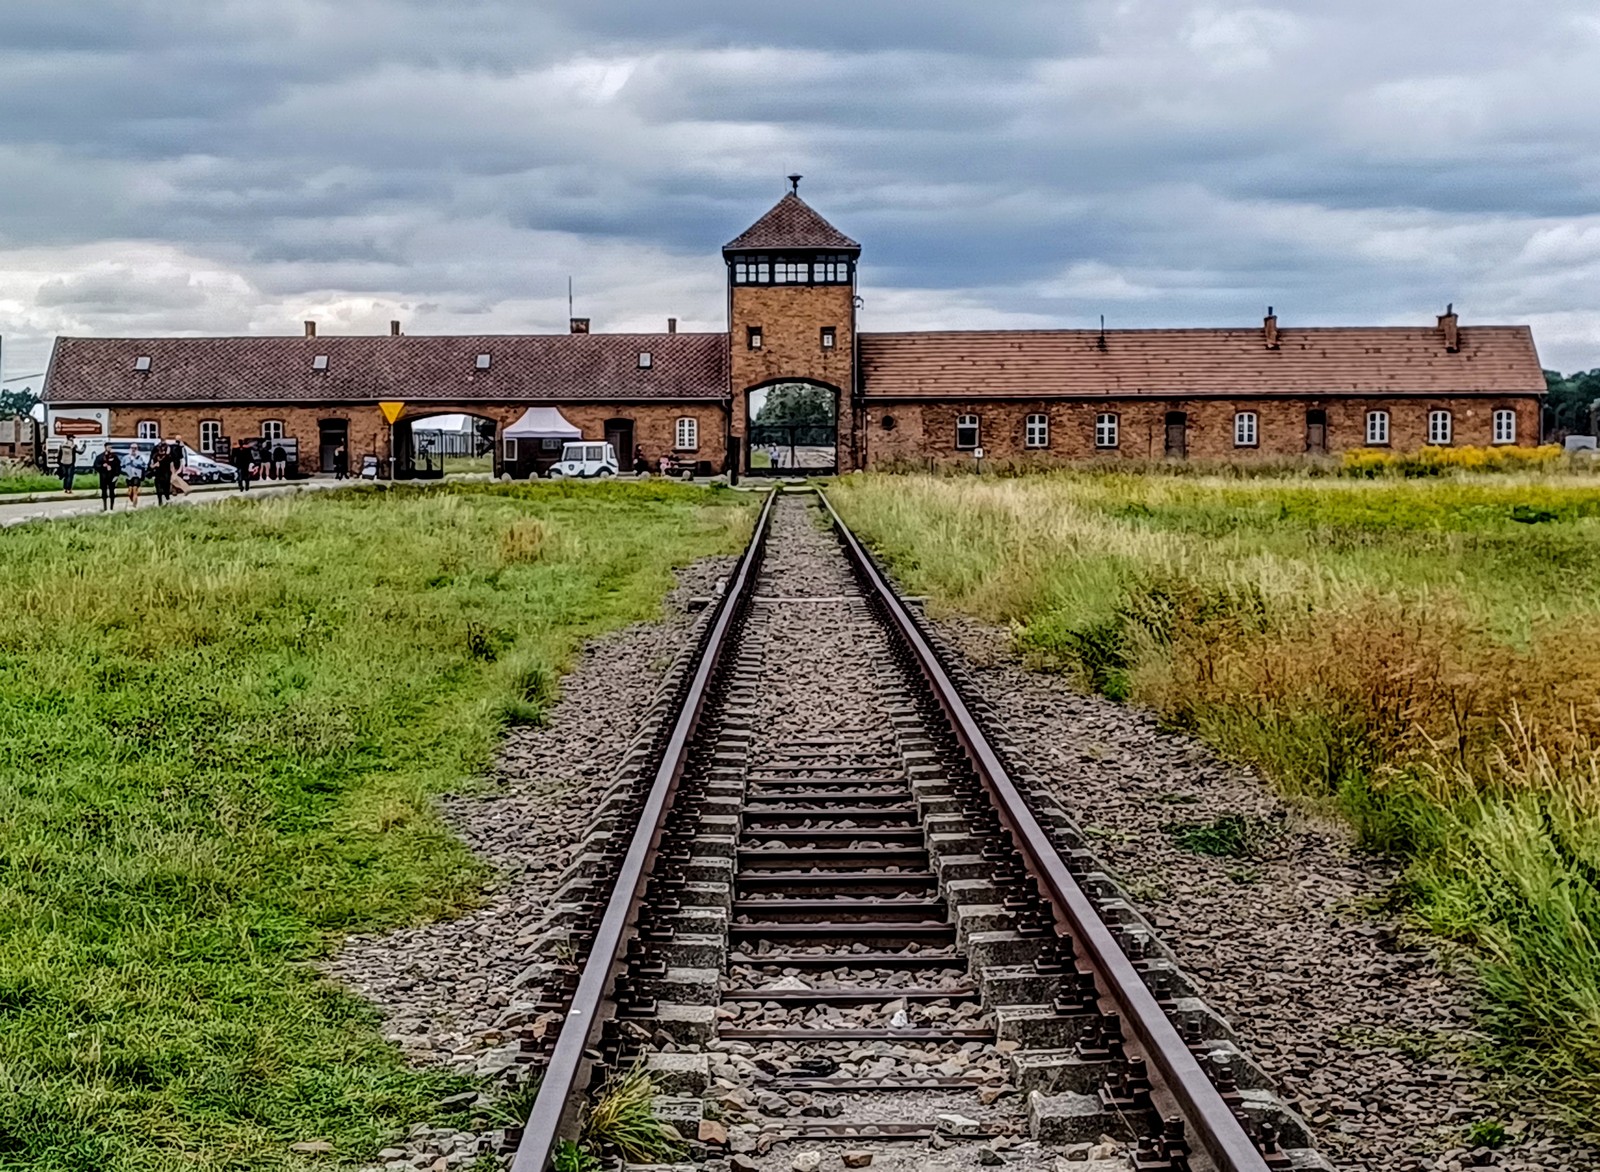 Kraków Auschwitz Trip Report